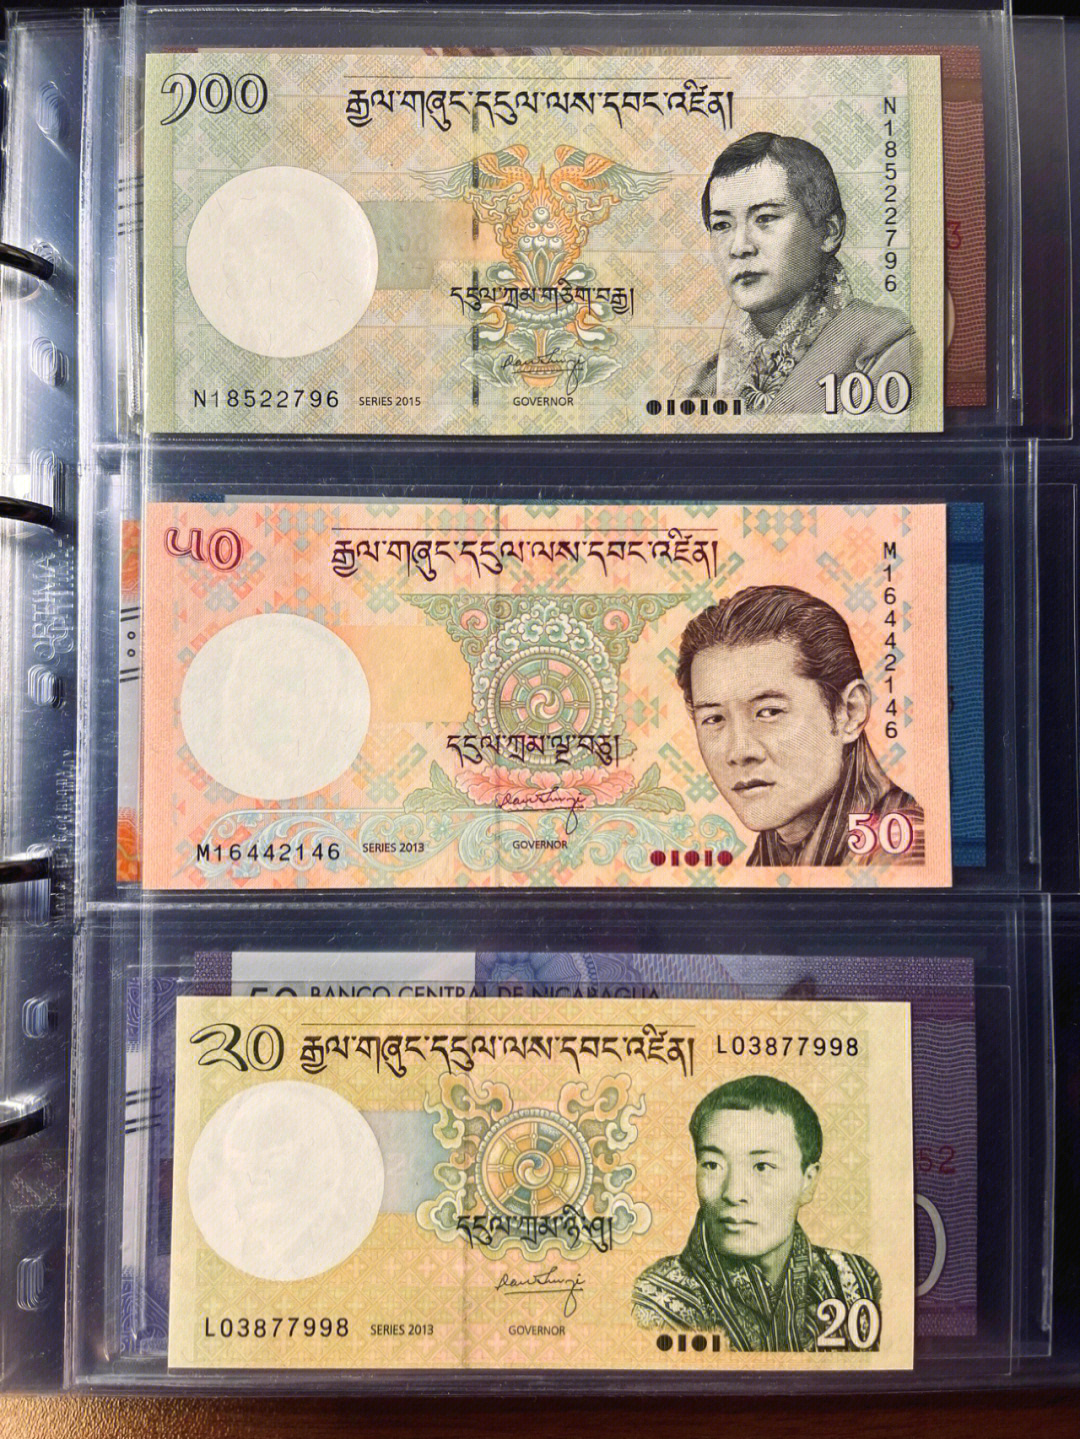 不丹9795带你看世界纸币,关注持续更新